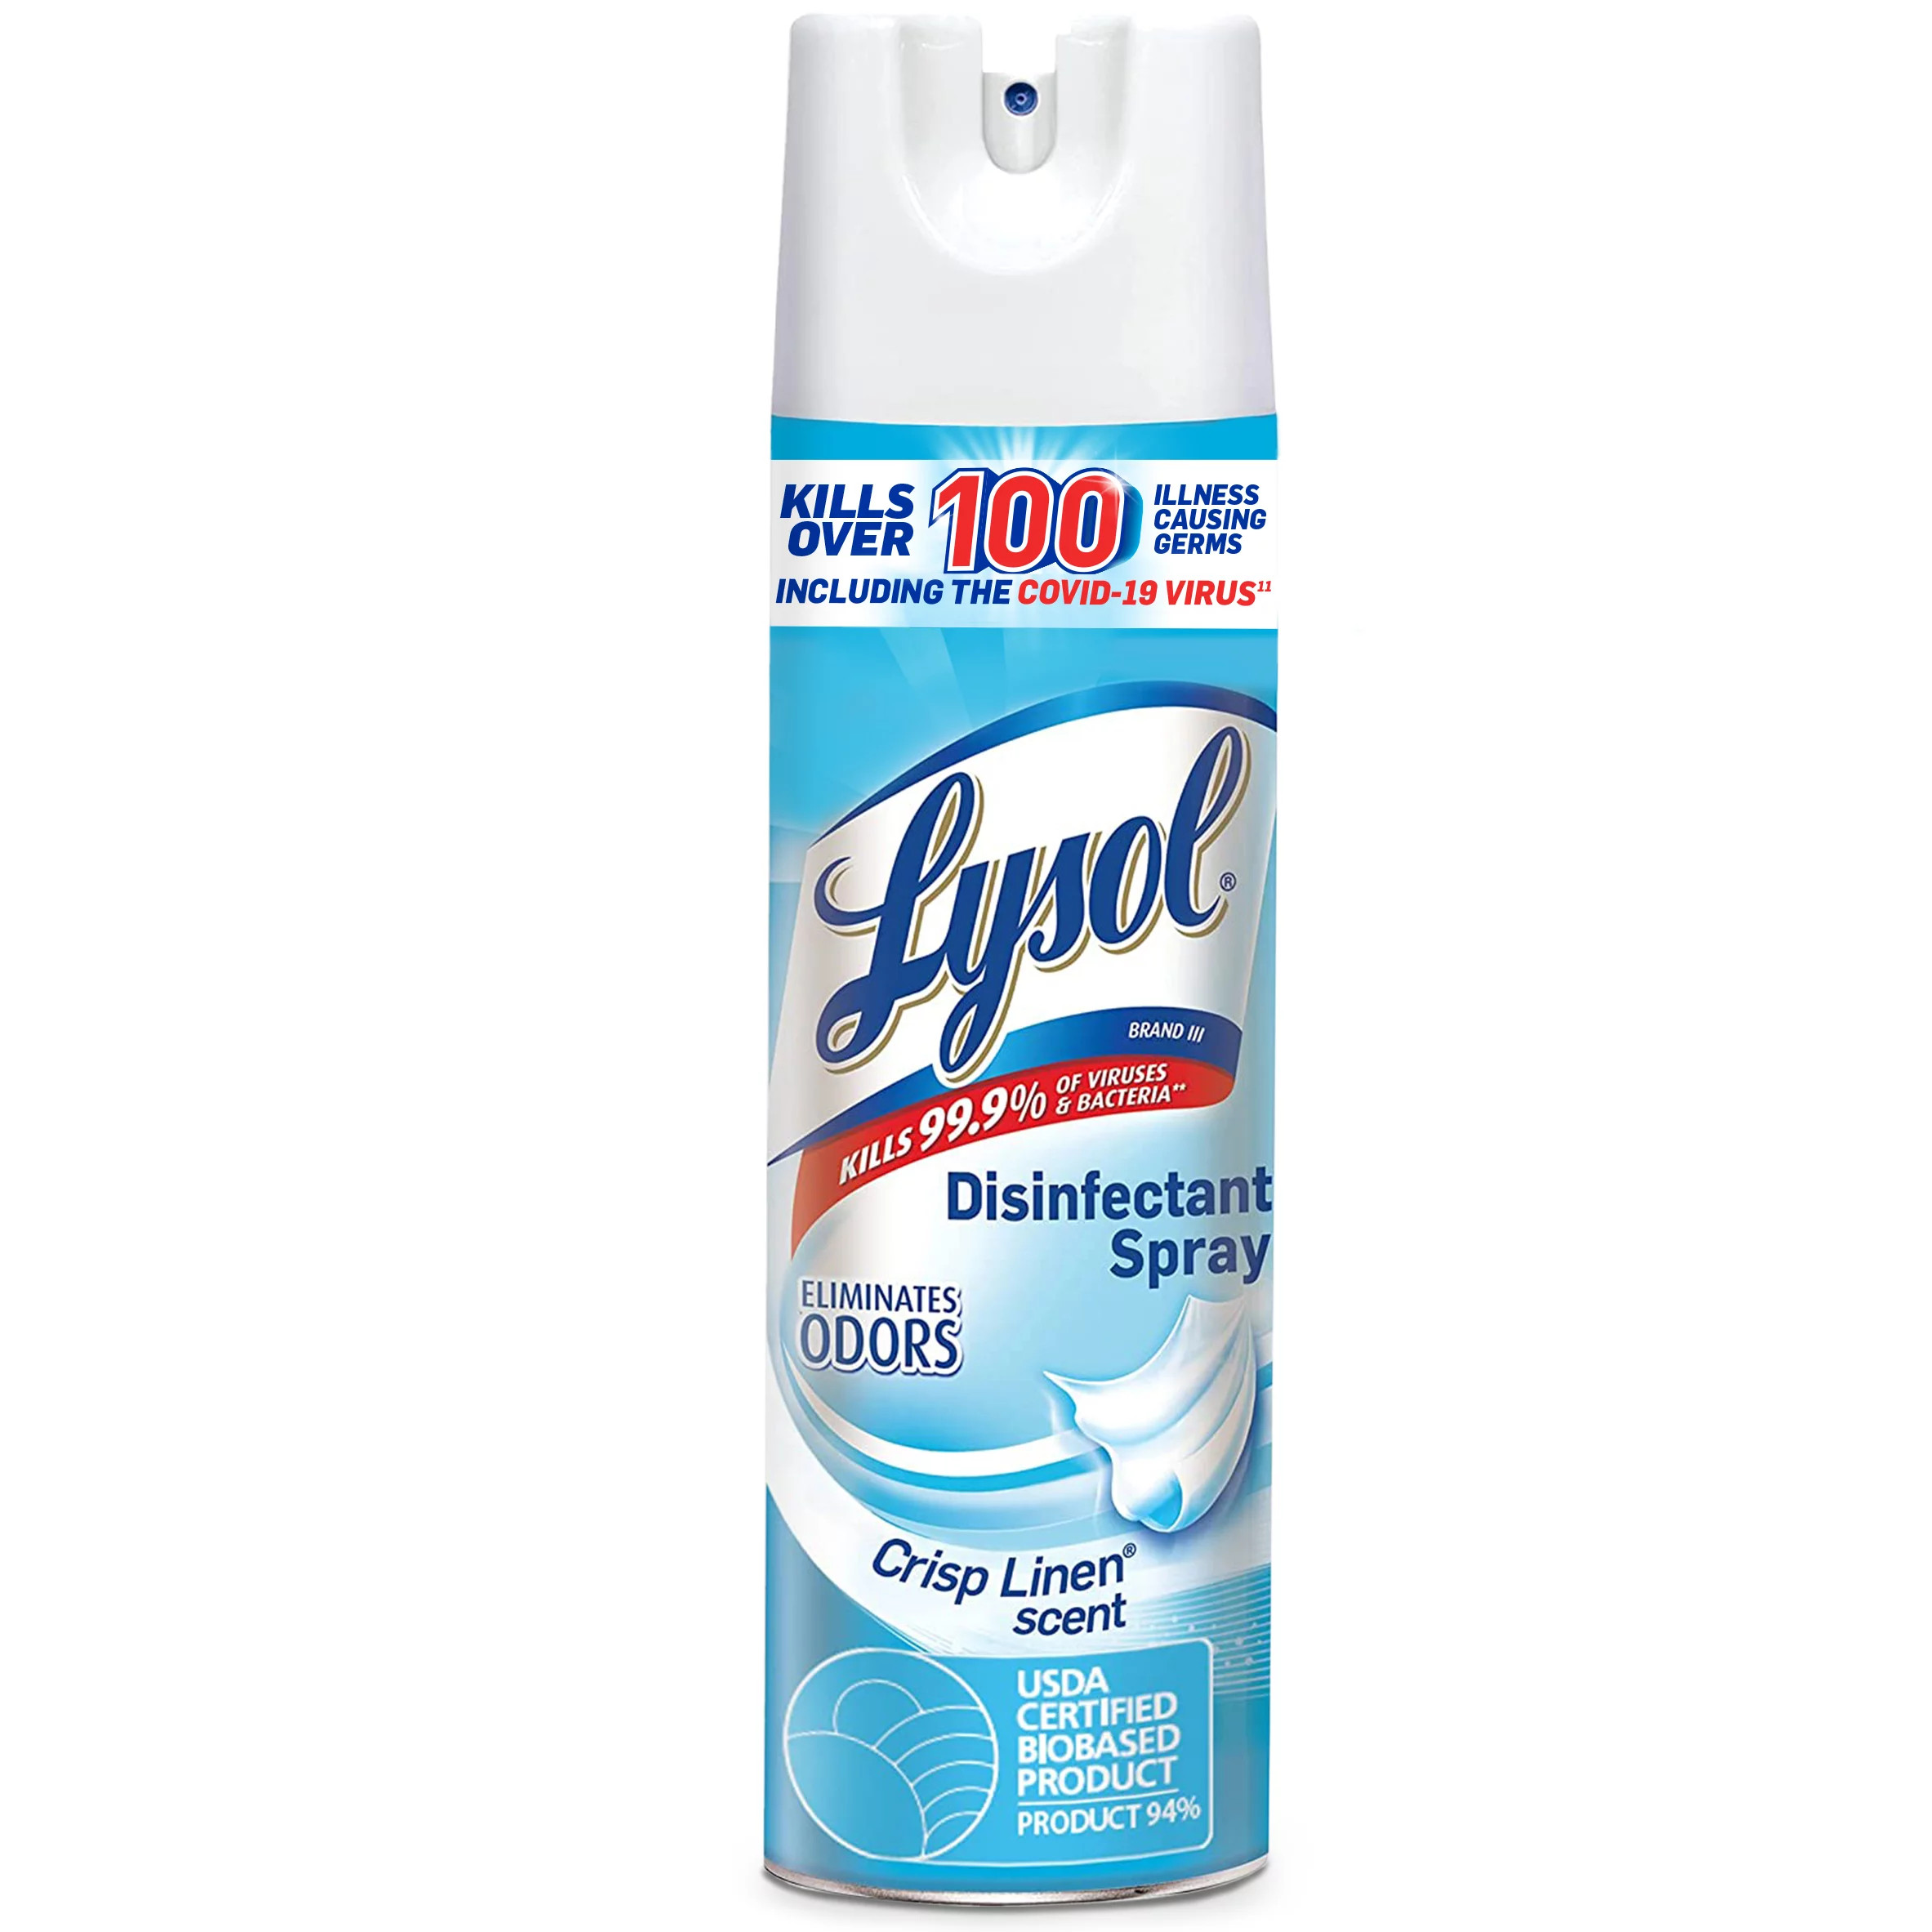 Xịt phòng khử trùng và kháng khuẩn Lysol Disinfectant Spray chai đơn 538g của Mỹ